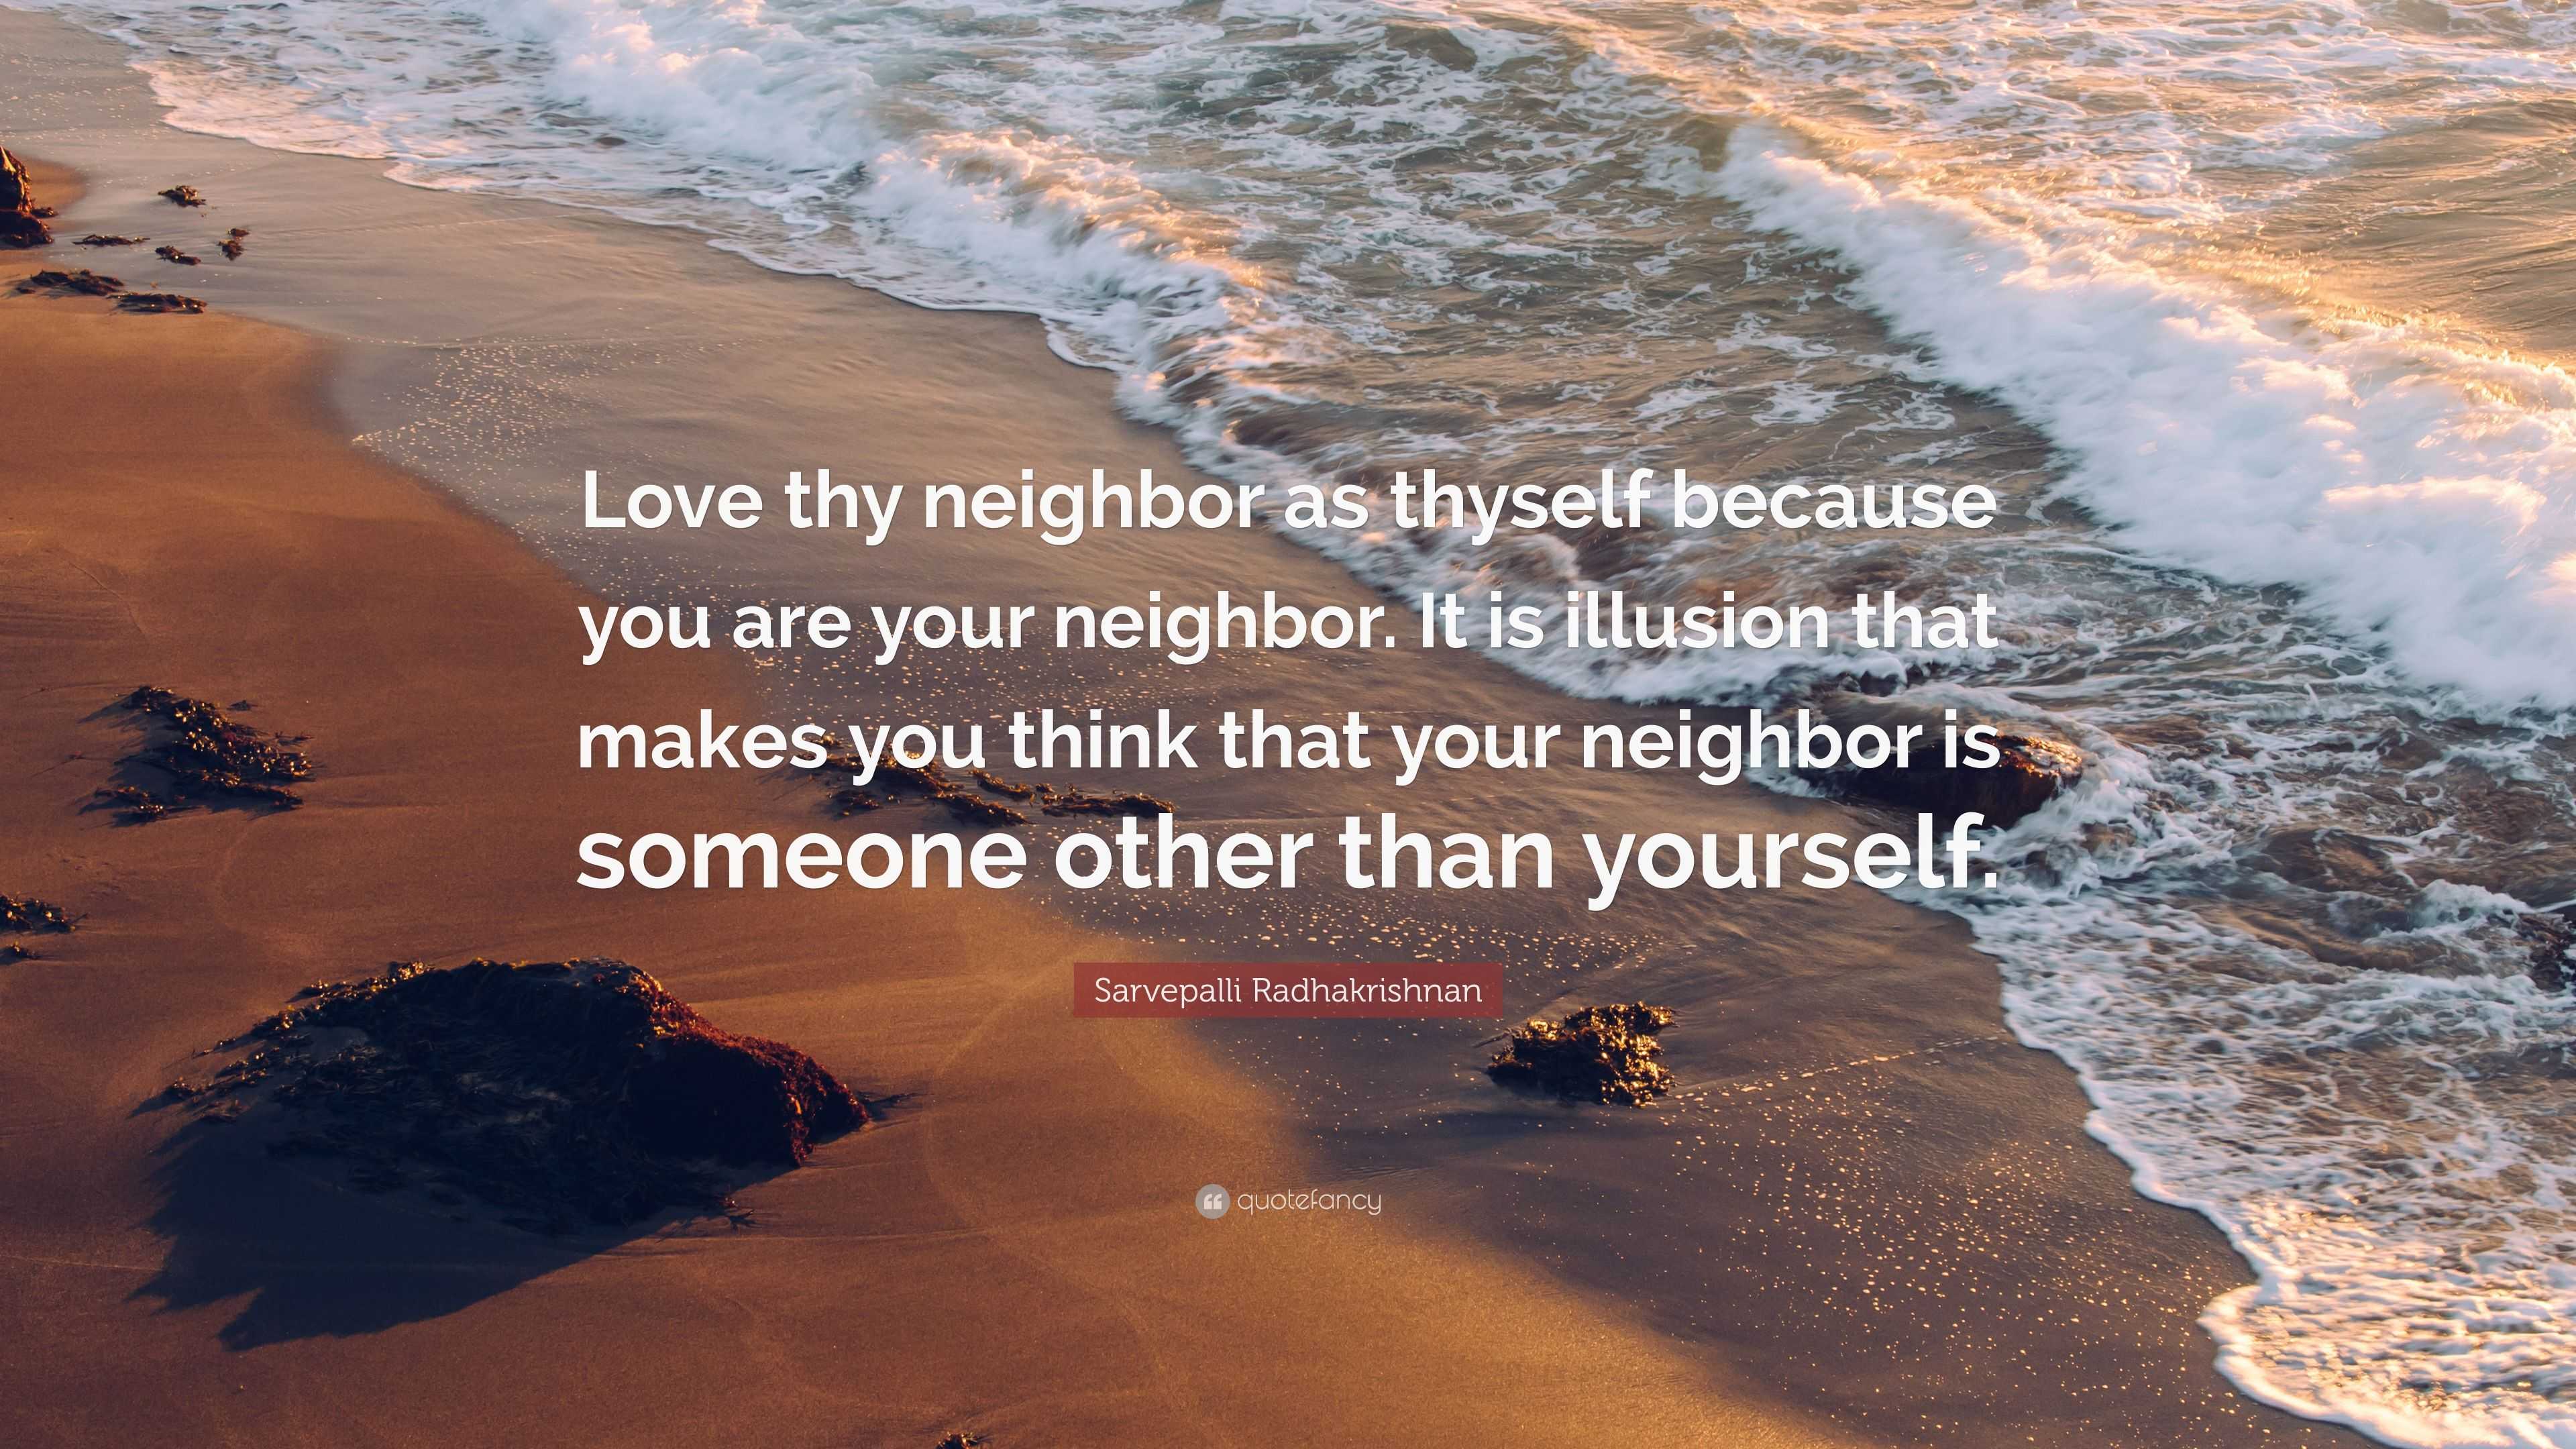 Sarvepalli Radhakrishnan Quote: “Love thy neighbor as thyself because ...